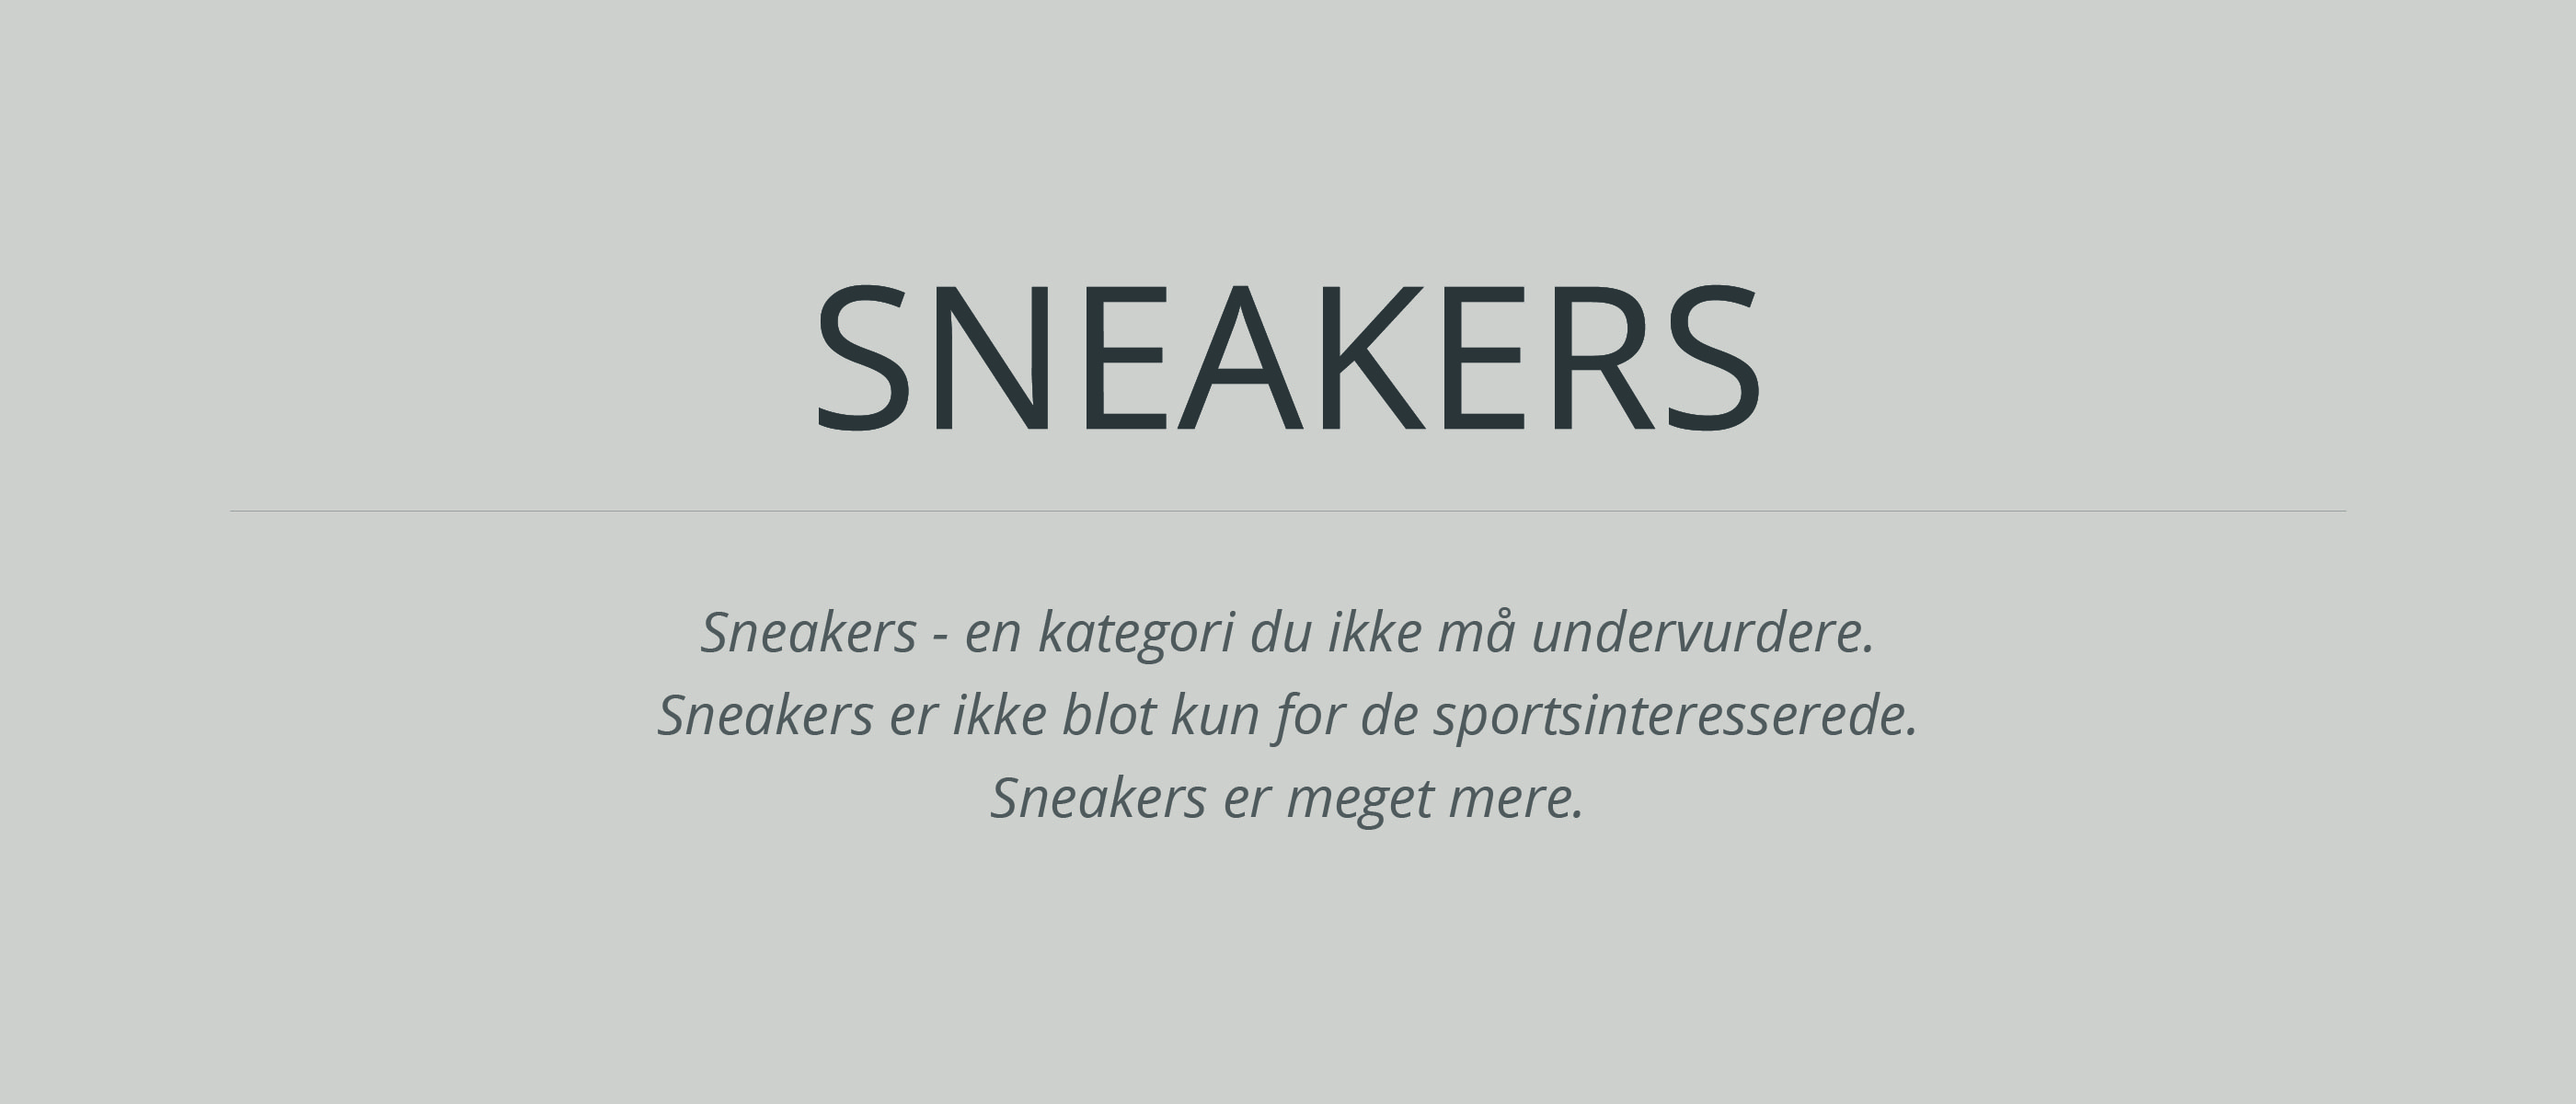 Sneakers er ikke blot kun for de sportsinteresserede - de er meget mere.